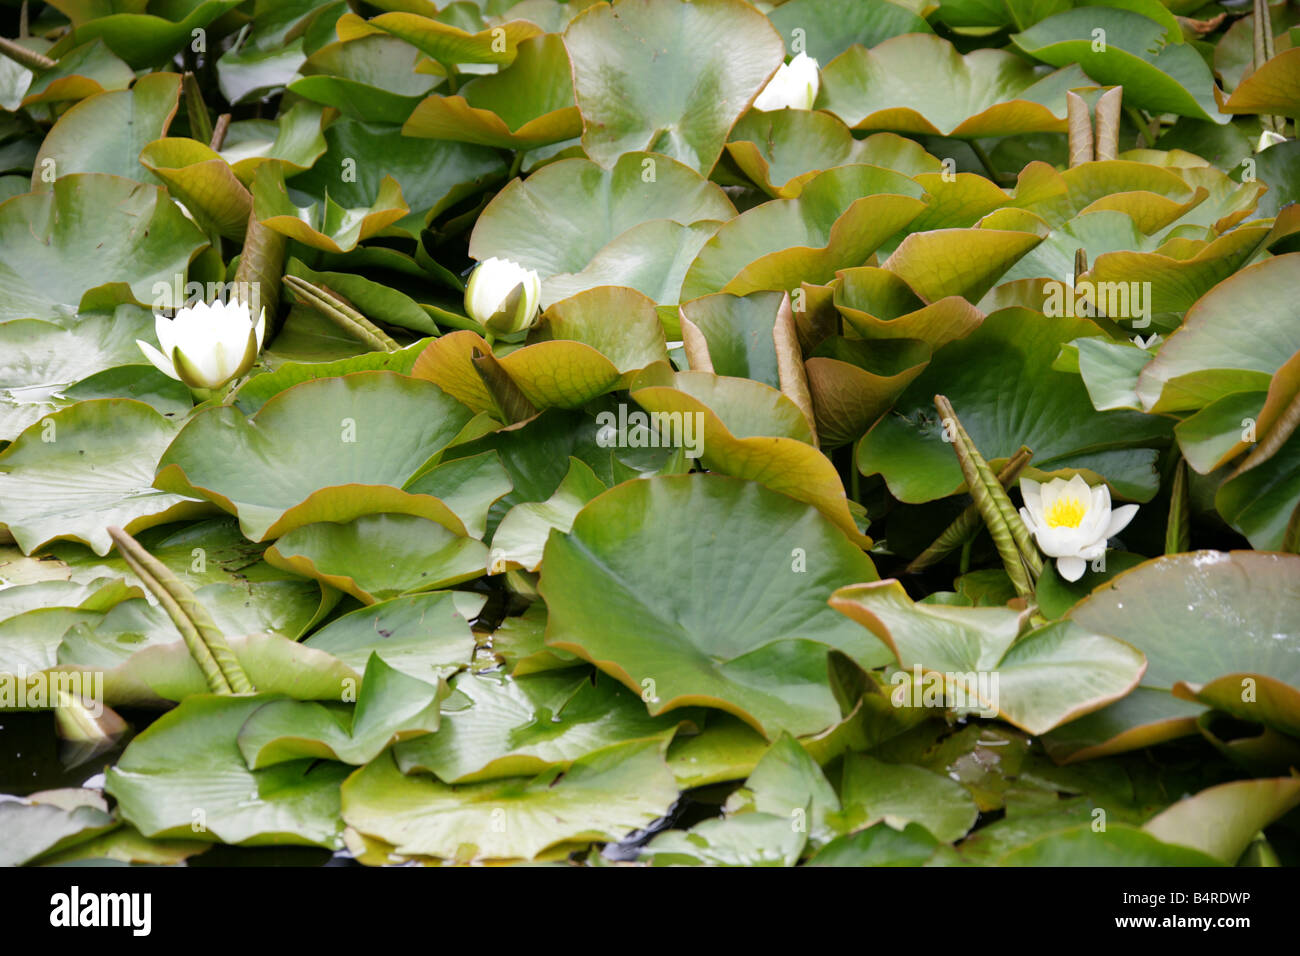 European White Water-Lily, European White Waterlily, White Pond Lily or White Water Lily, Nymphaea alba, Nymphaeaceae Stock Photo